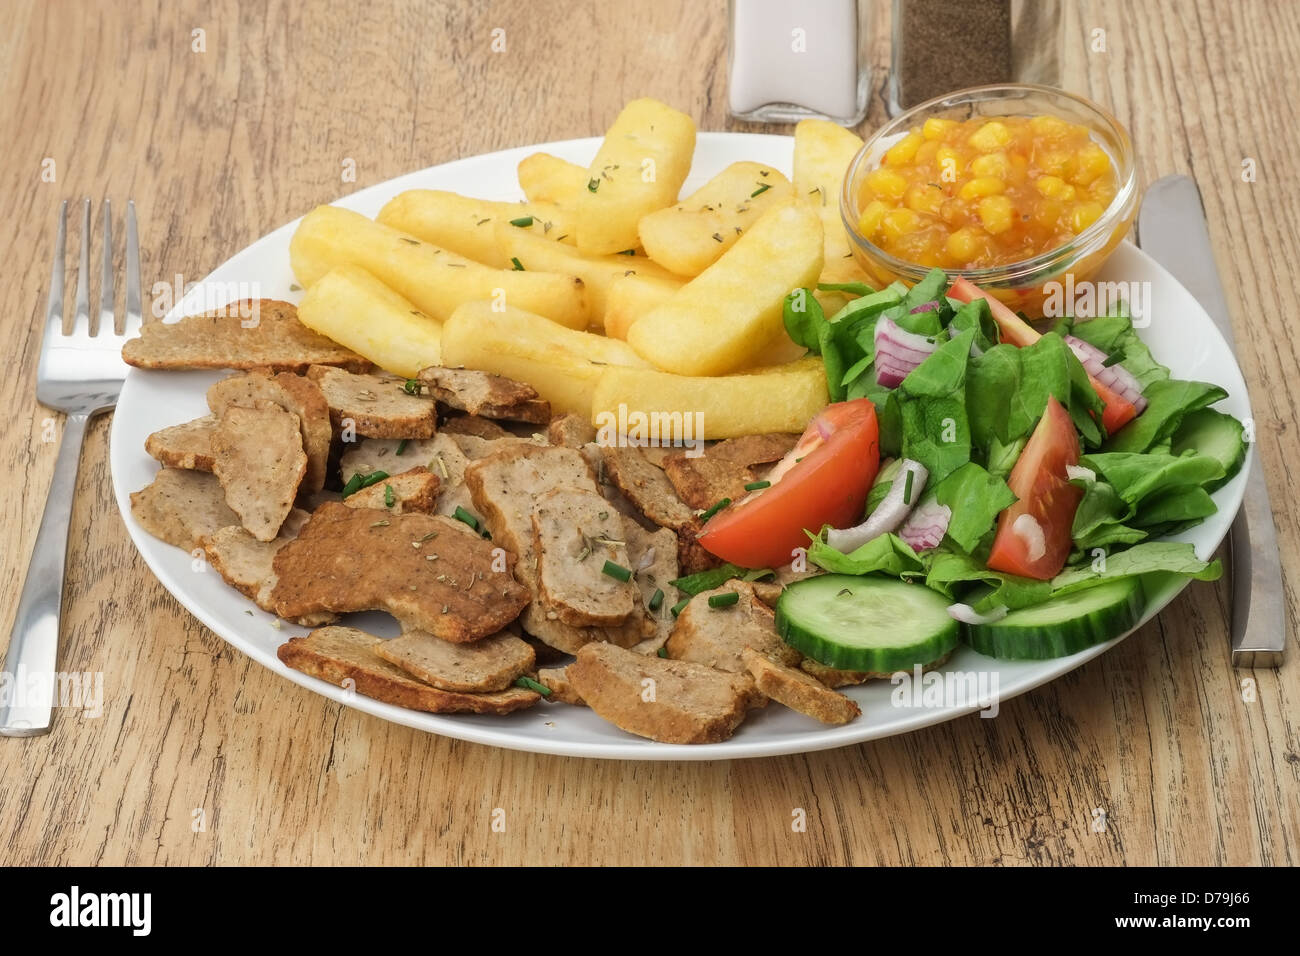 Une assiette de tranches de boeuf kebab gyros ou shawarma viande avec des frites et salade Banque D'Images